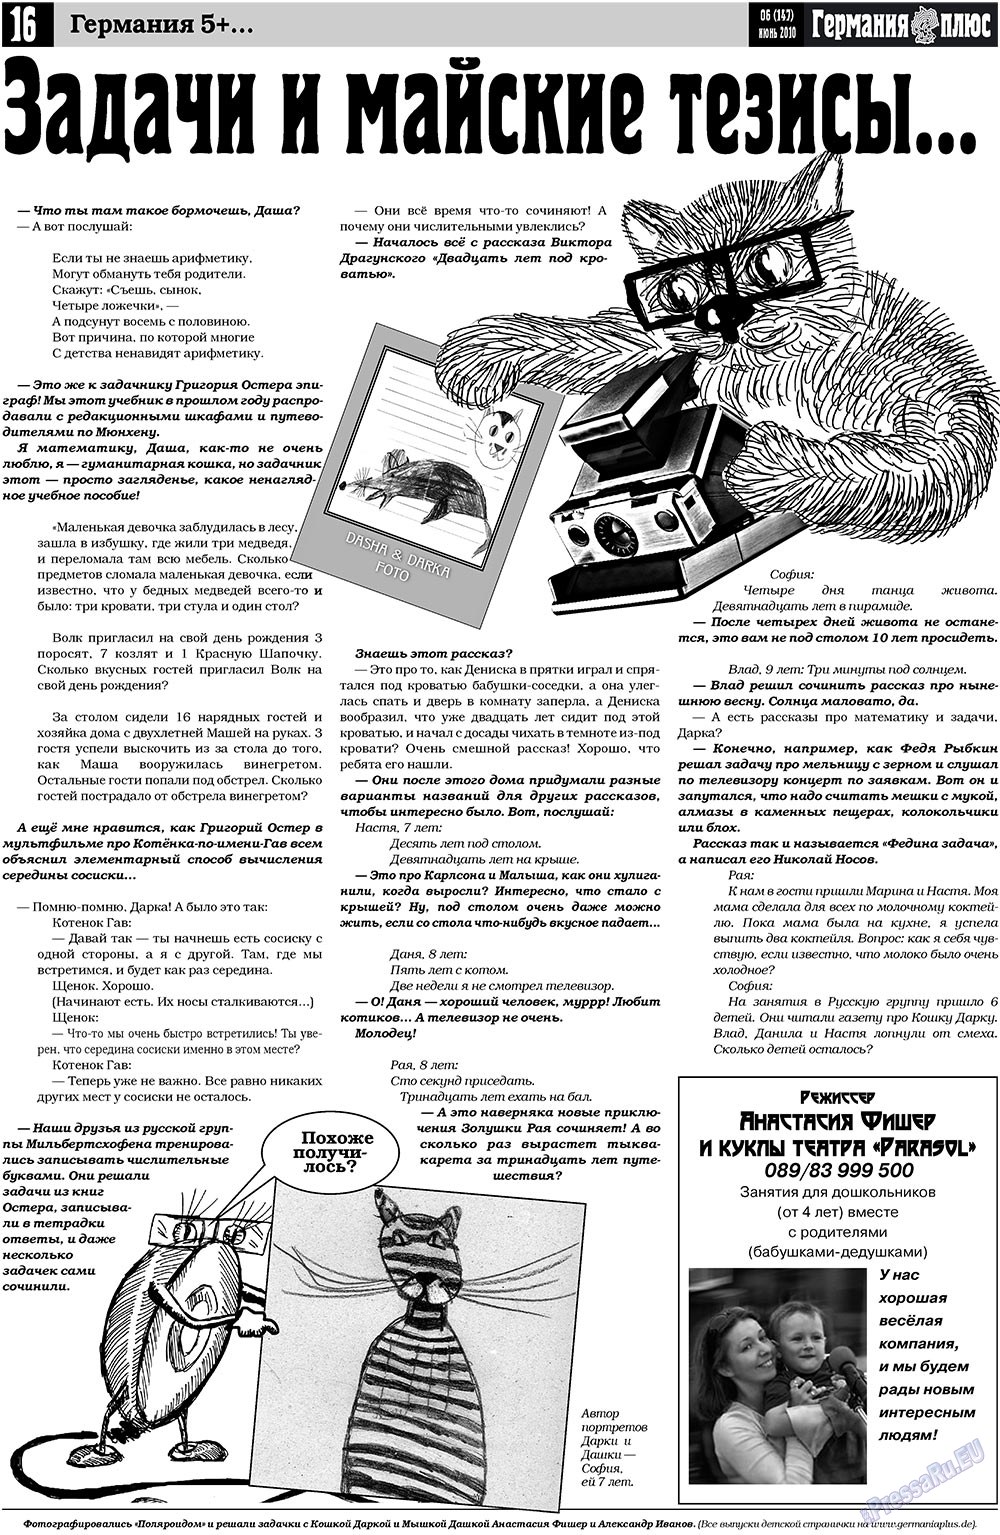 Германия плюс, газета. 2010 №6 стр.16